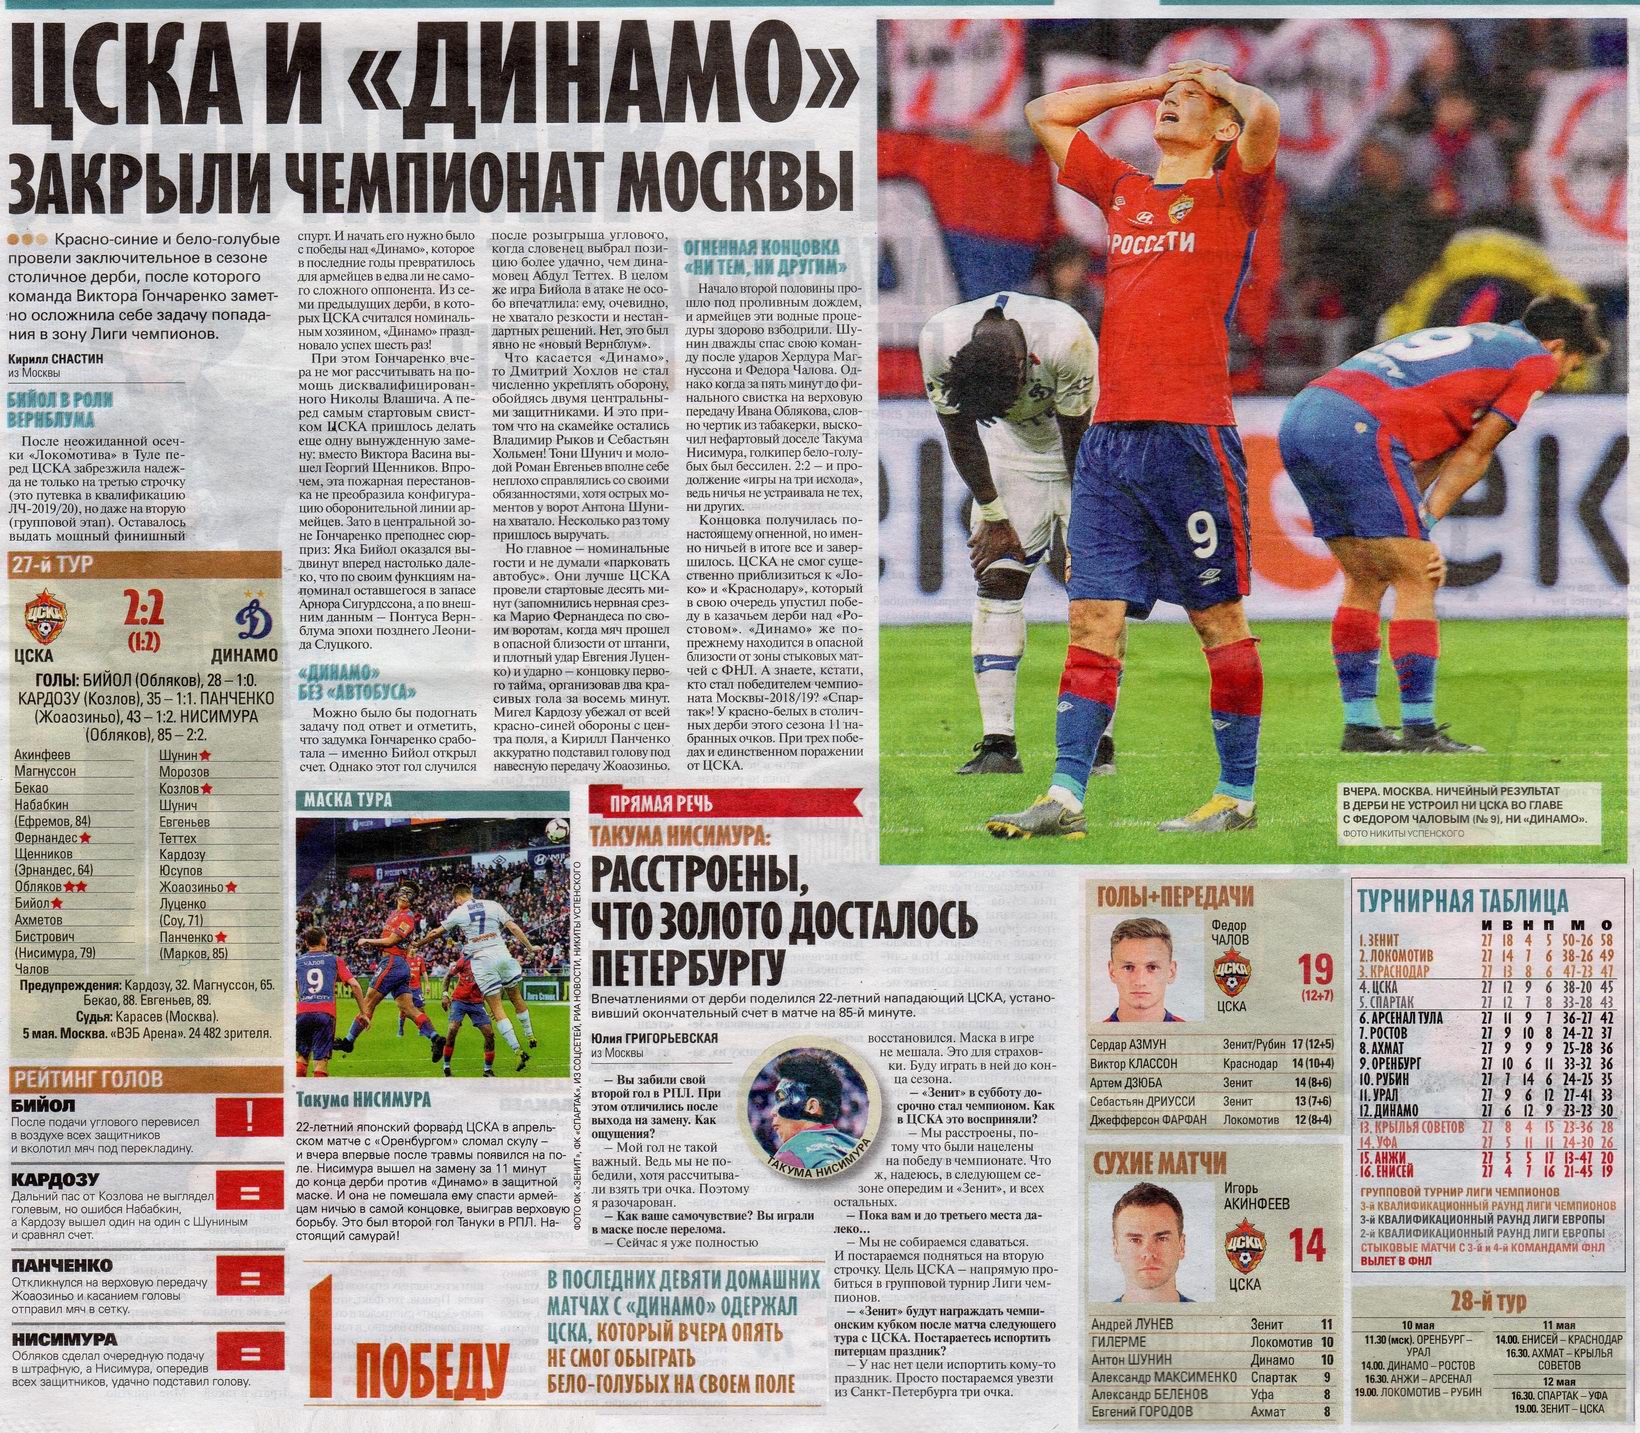 2019-05-05.CSKA-DinamoM.2